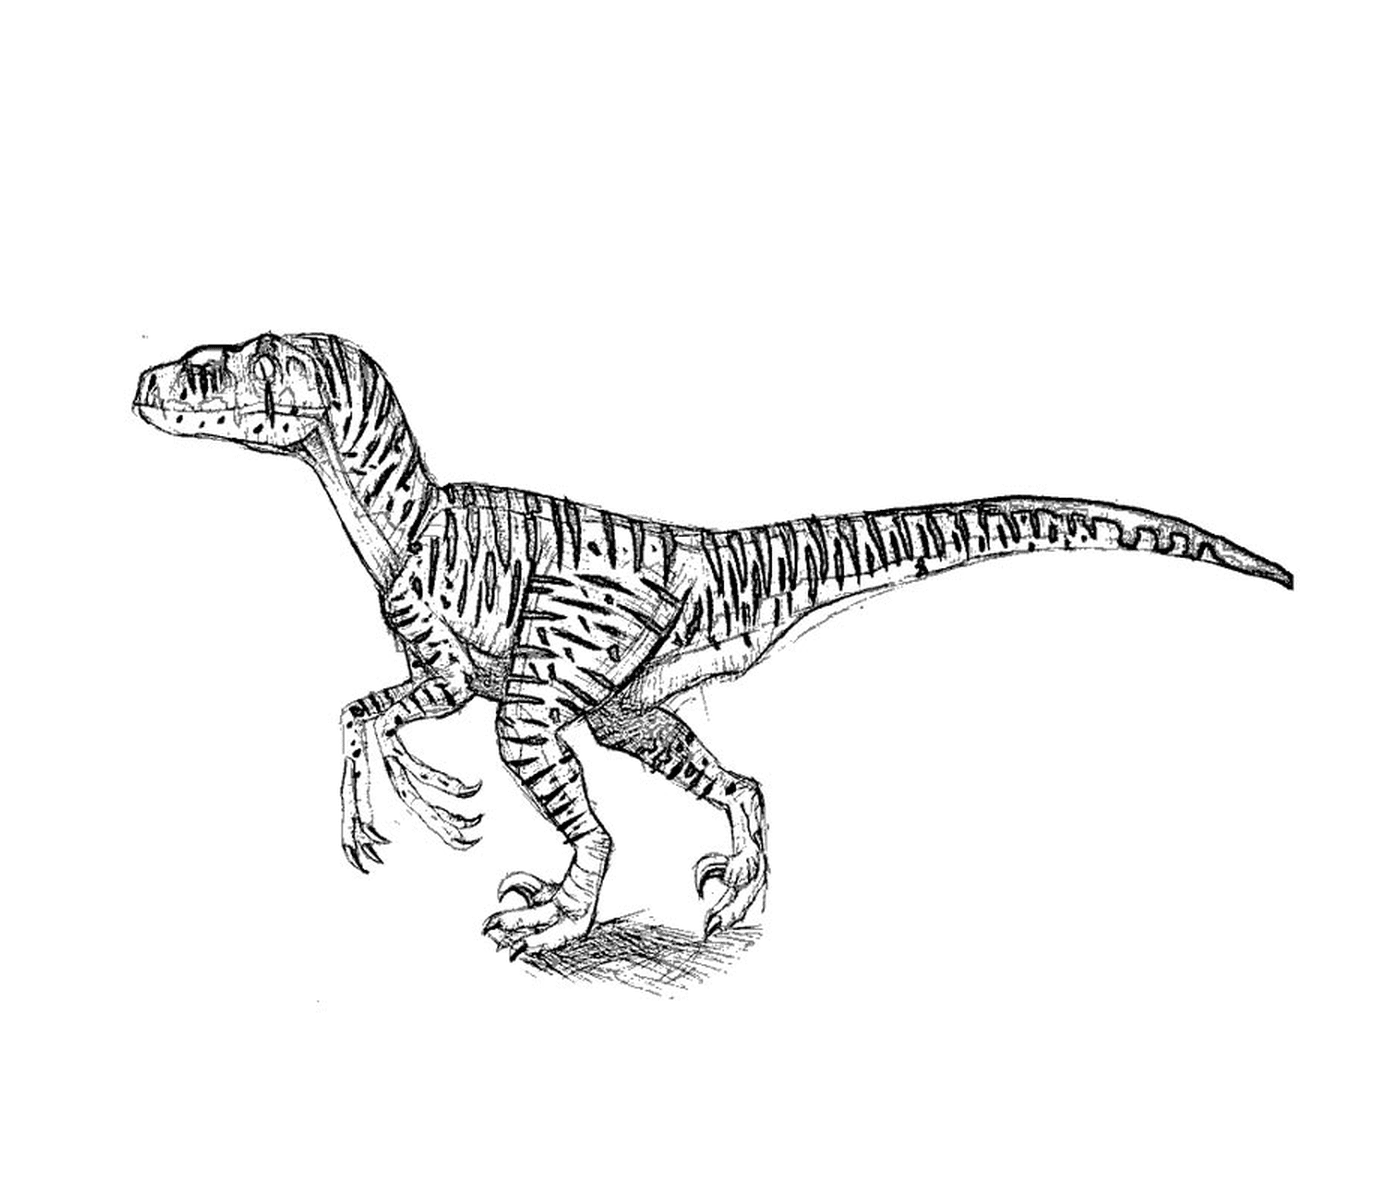  T-Rex da Jurassic Park, maestosa passeggiata 